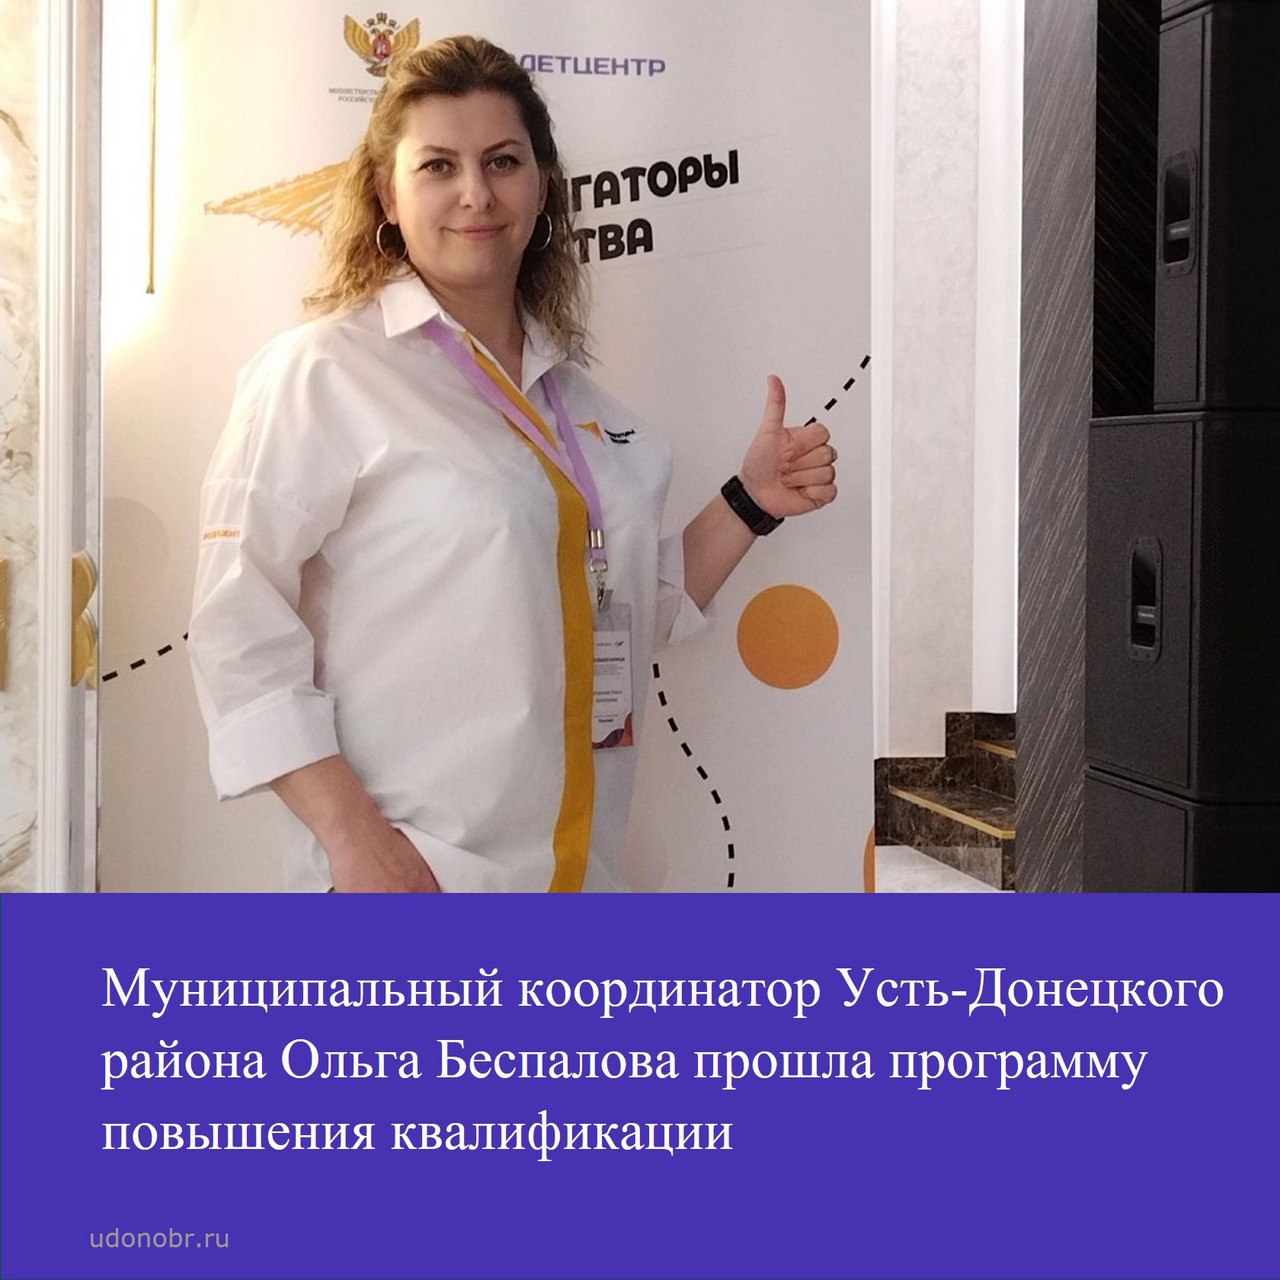 Муниципальный координатор Усть-Донецкого района Ольга Беспалова прошла программу повышения квалификации